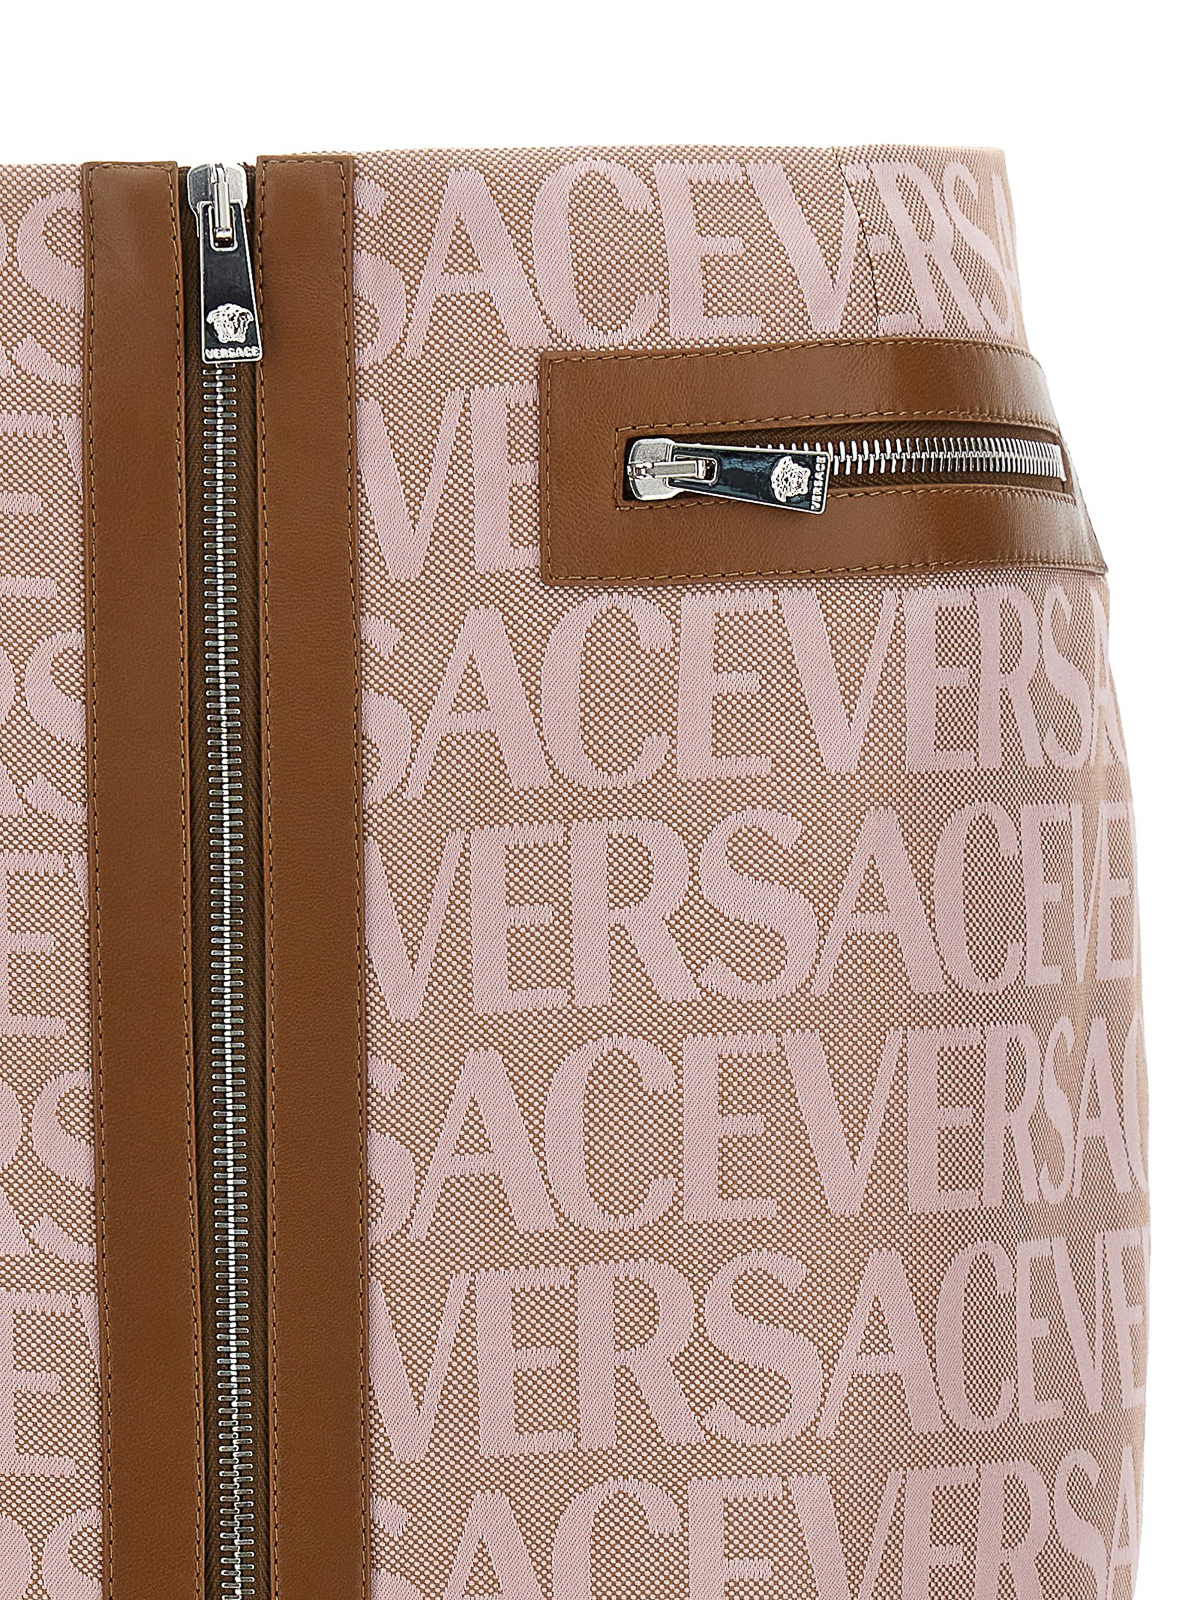 Shop Versace Minifalda - Rosado